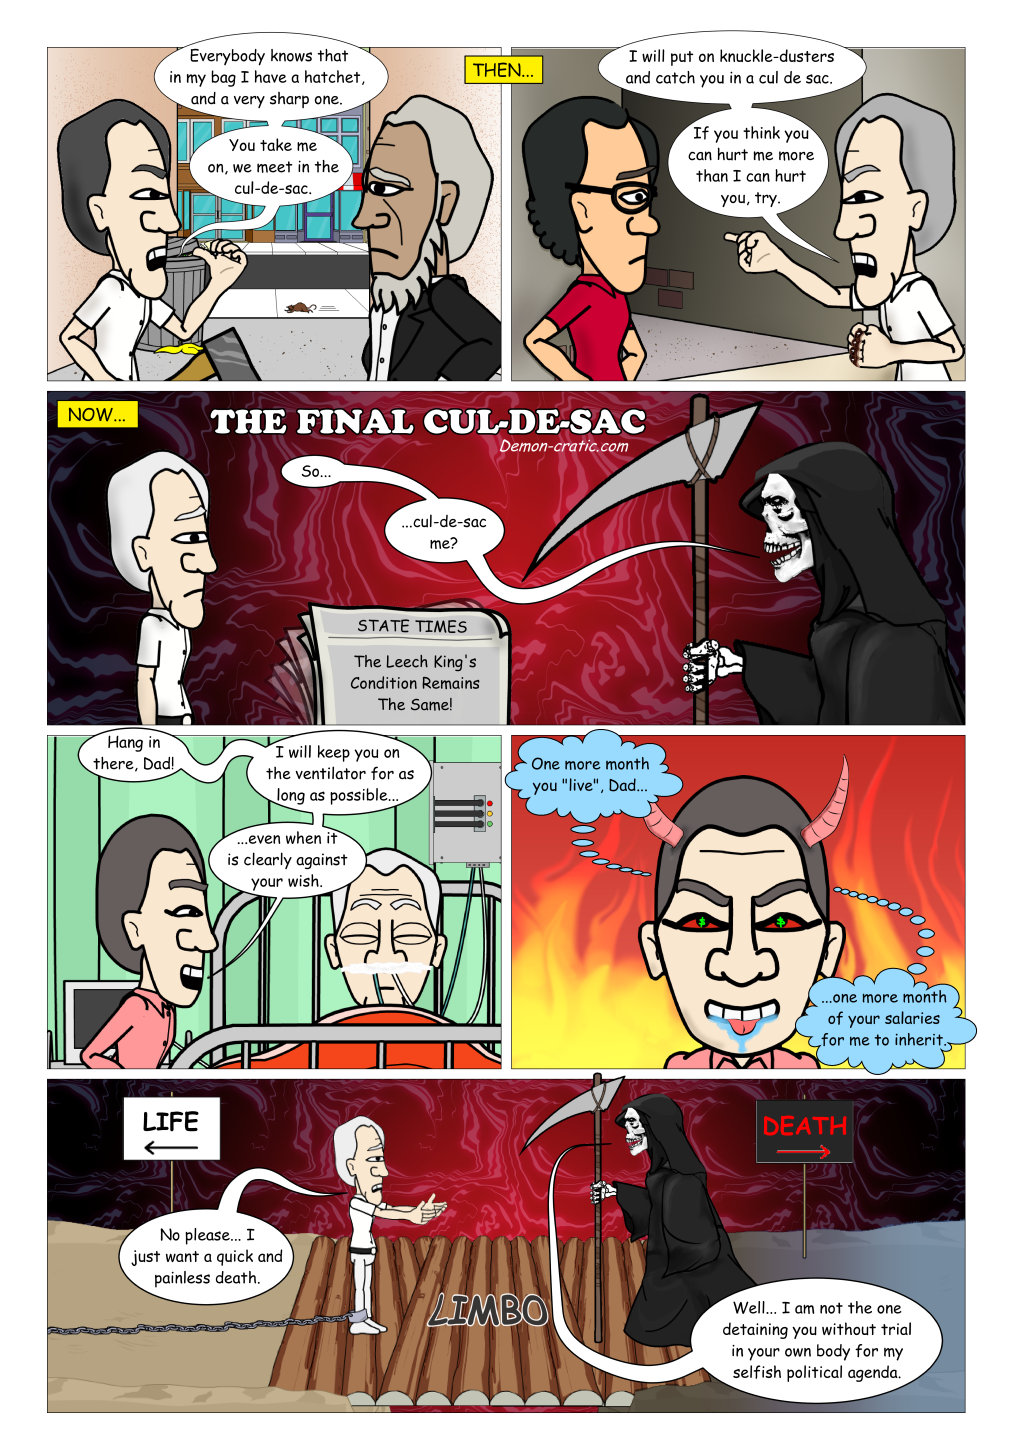 The Final Cul-de-sac - Demon-cratic